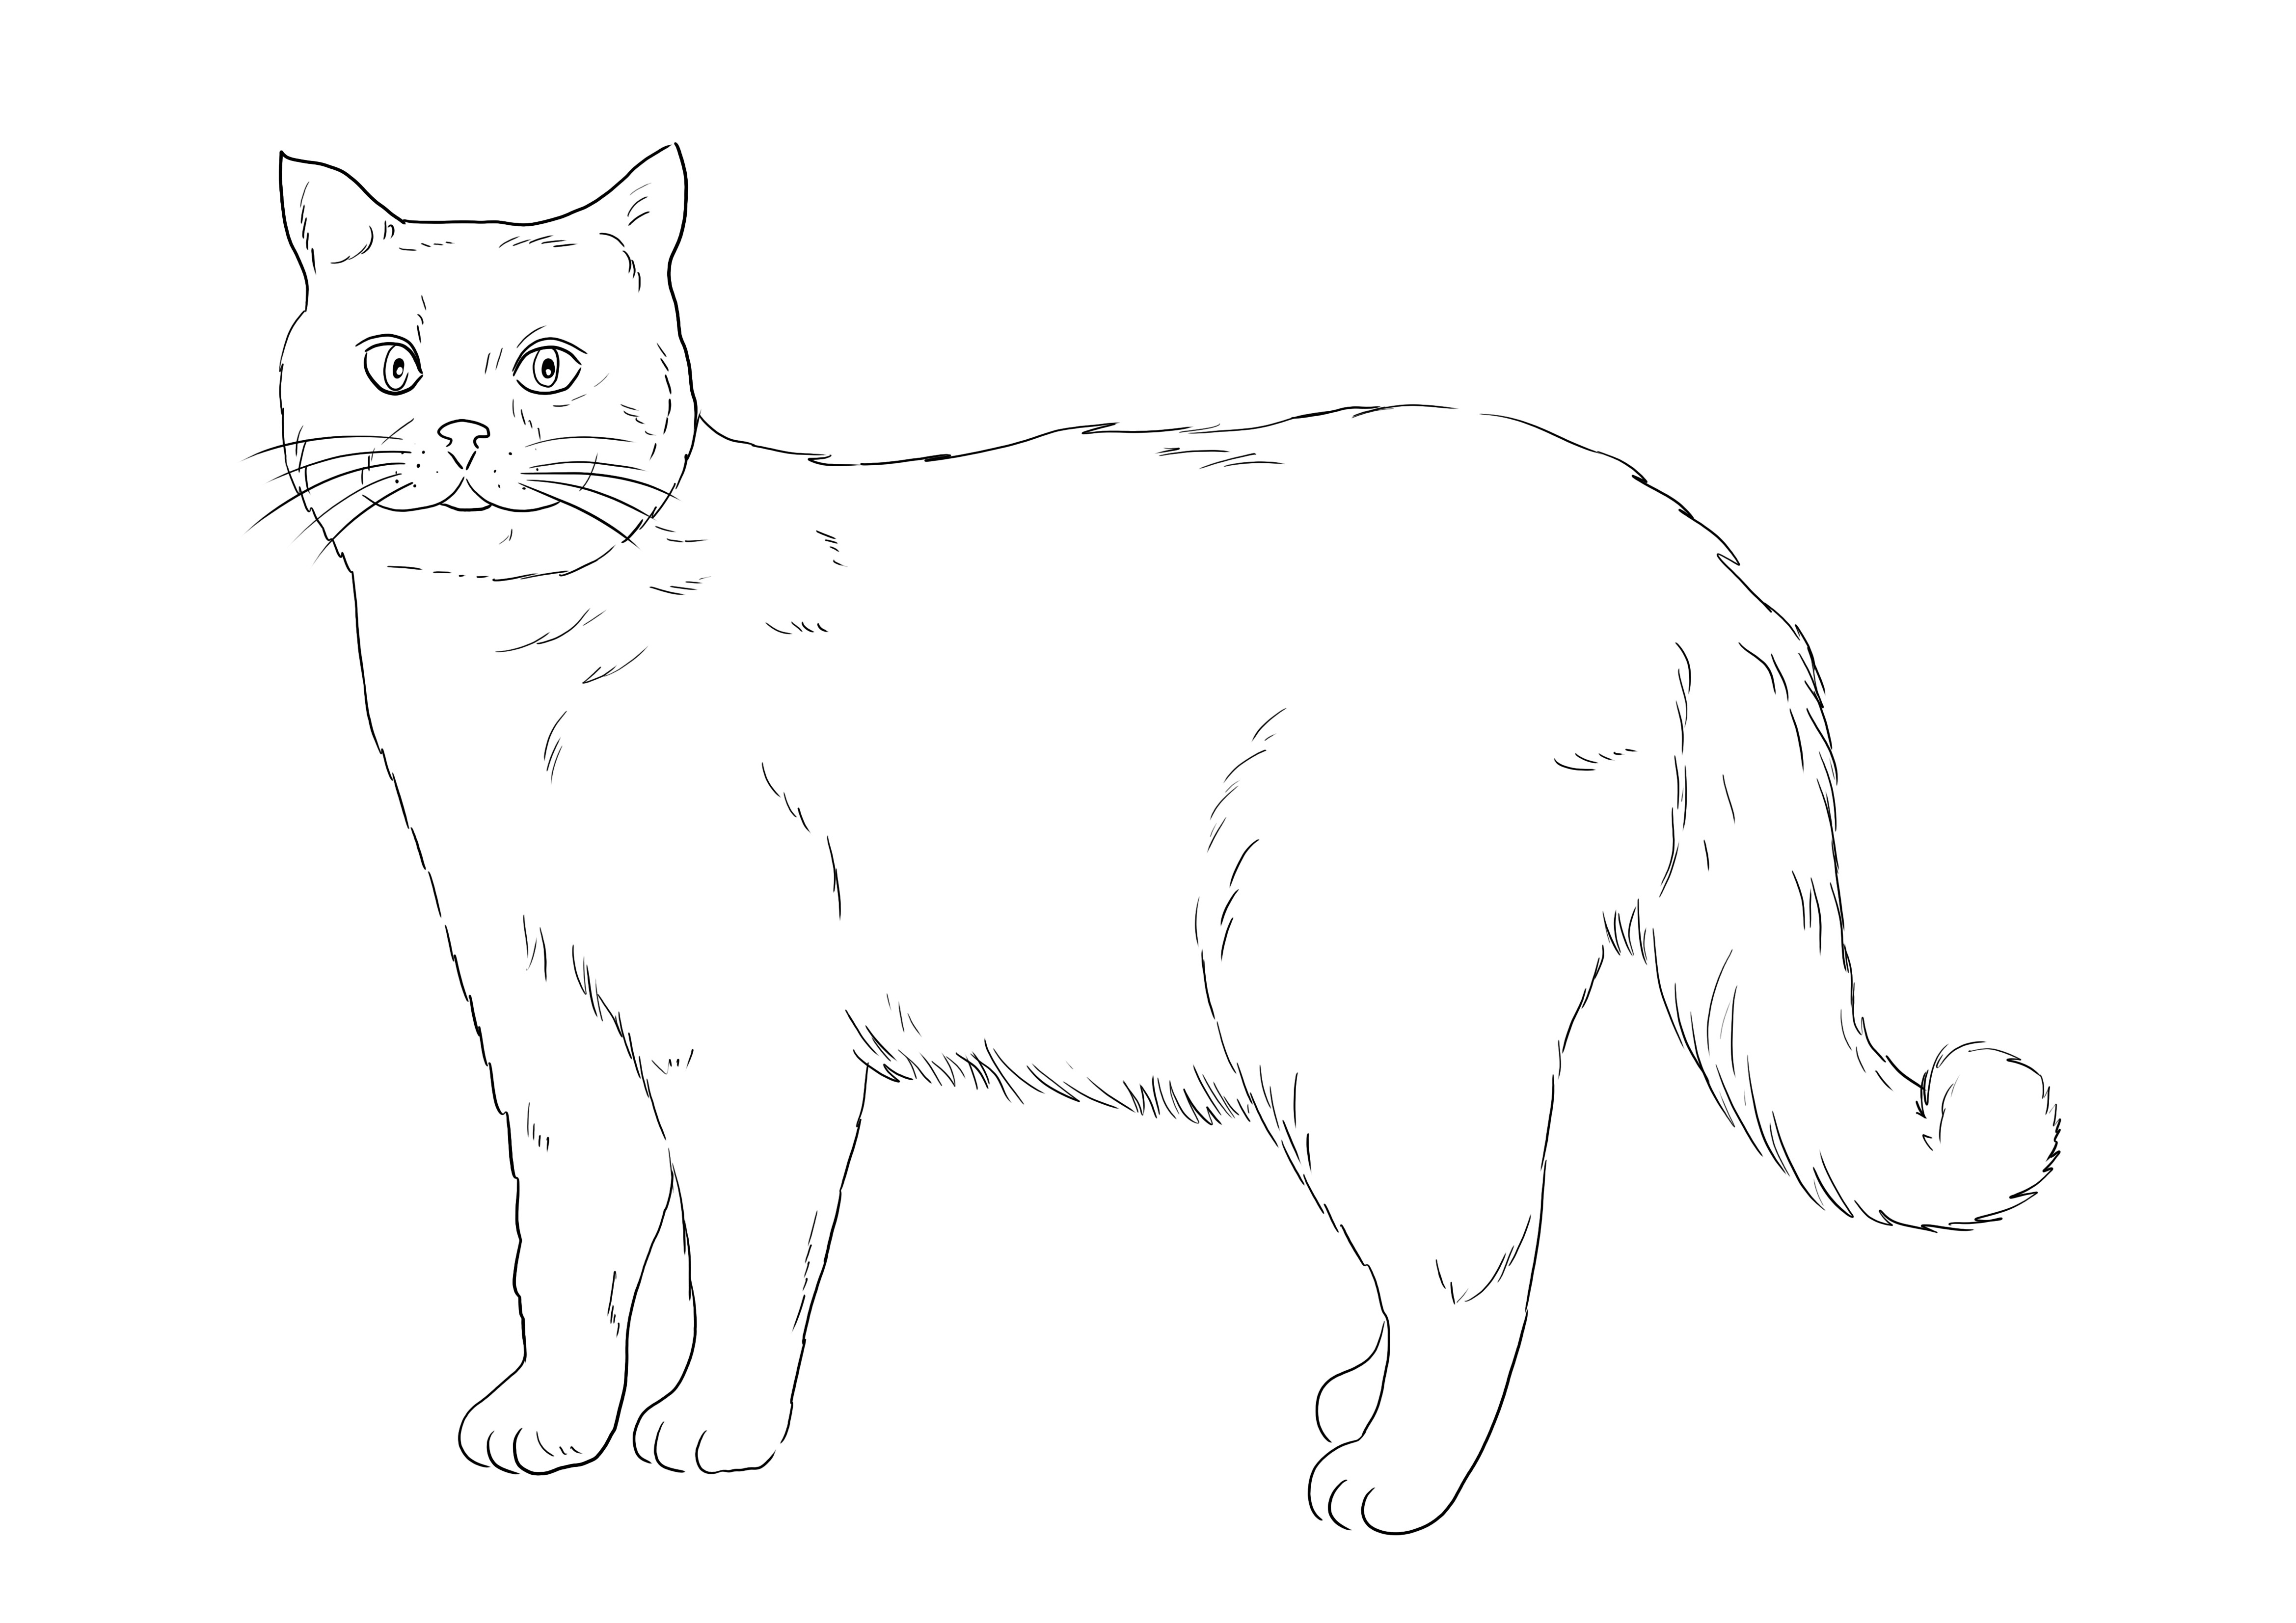 Ingyenesen kifesthető a brit rövidszőrű macska, kinyomtatható vagy menthető későbbre és színezhető